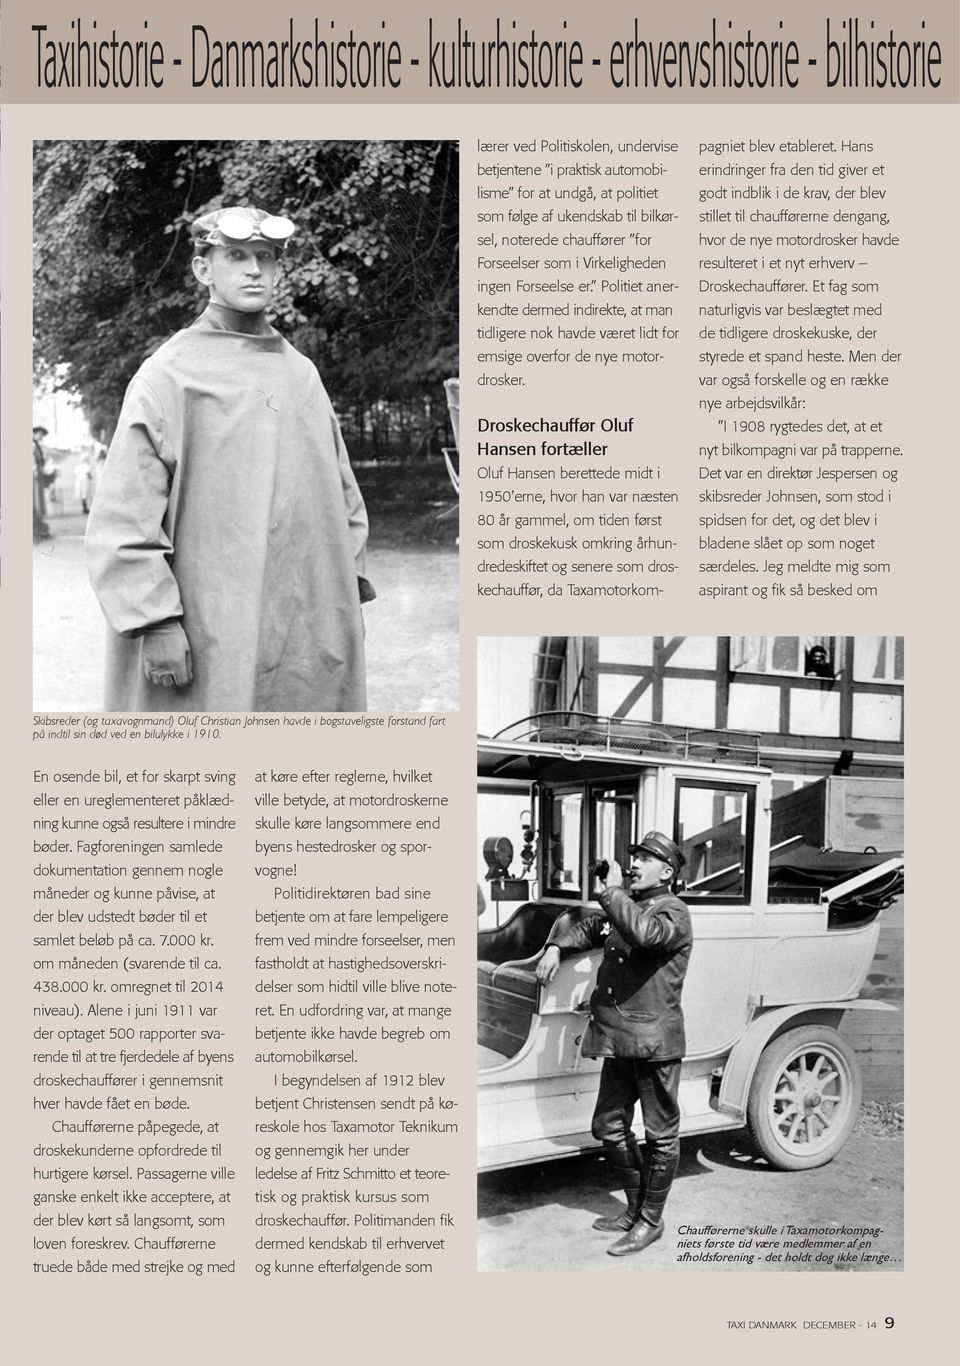 Droskechauffør Oluf Hansen fortæller Oluf Hansen berettede midt i 1950 erne, hvor han var næsten 80 år gammel, om tiden først som droskekusk omkring århundredeskiftet og senere som droskechauffør, da